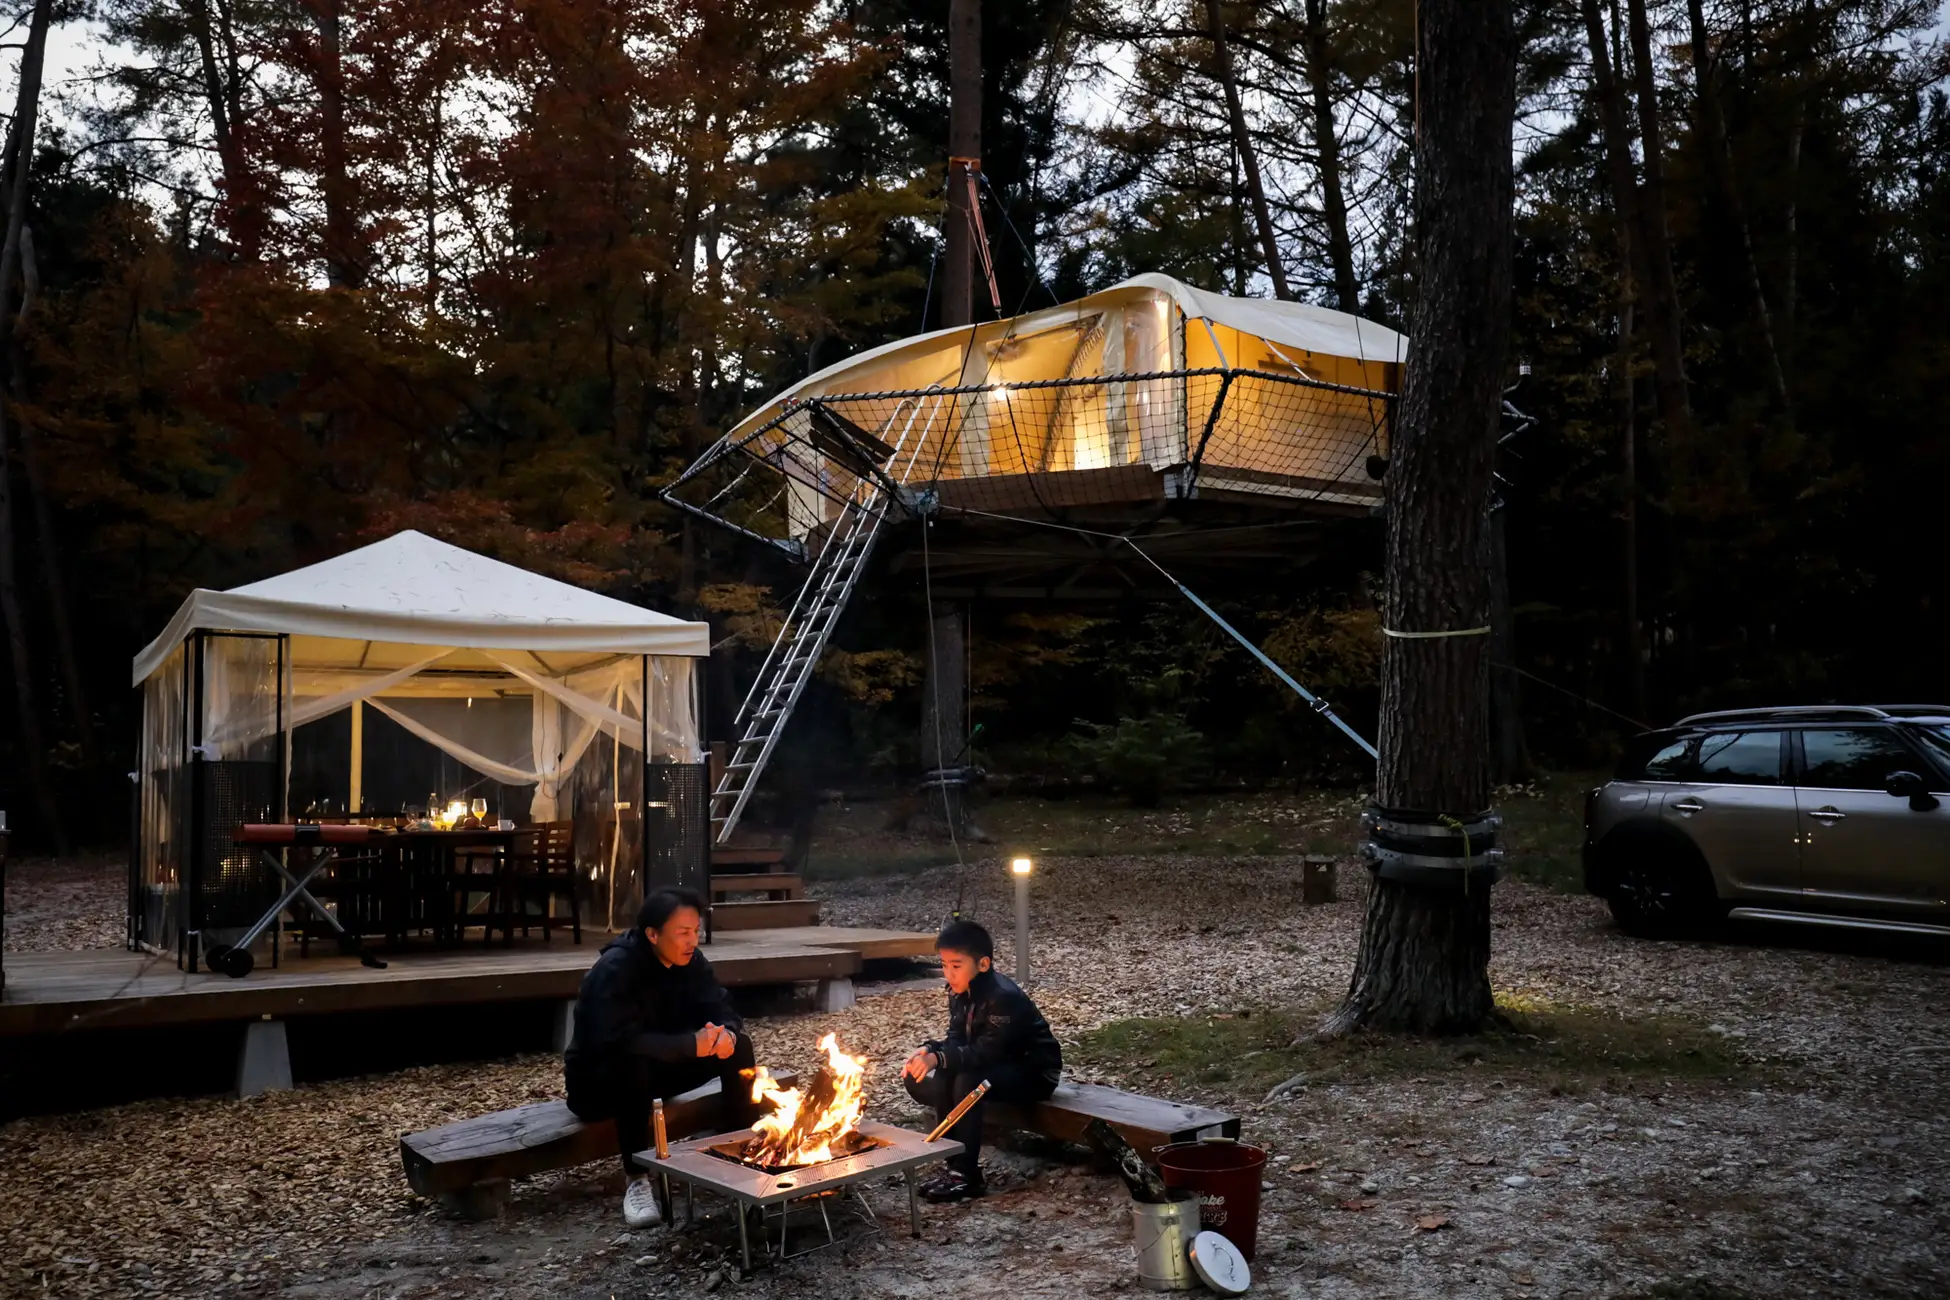 長野県松川町のキャンプ場に、樹上キャンプを体験できる「ツリーフロア-KAZE-」が新規オープン